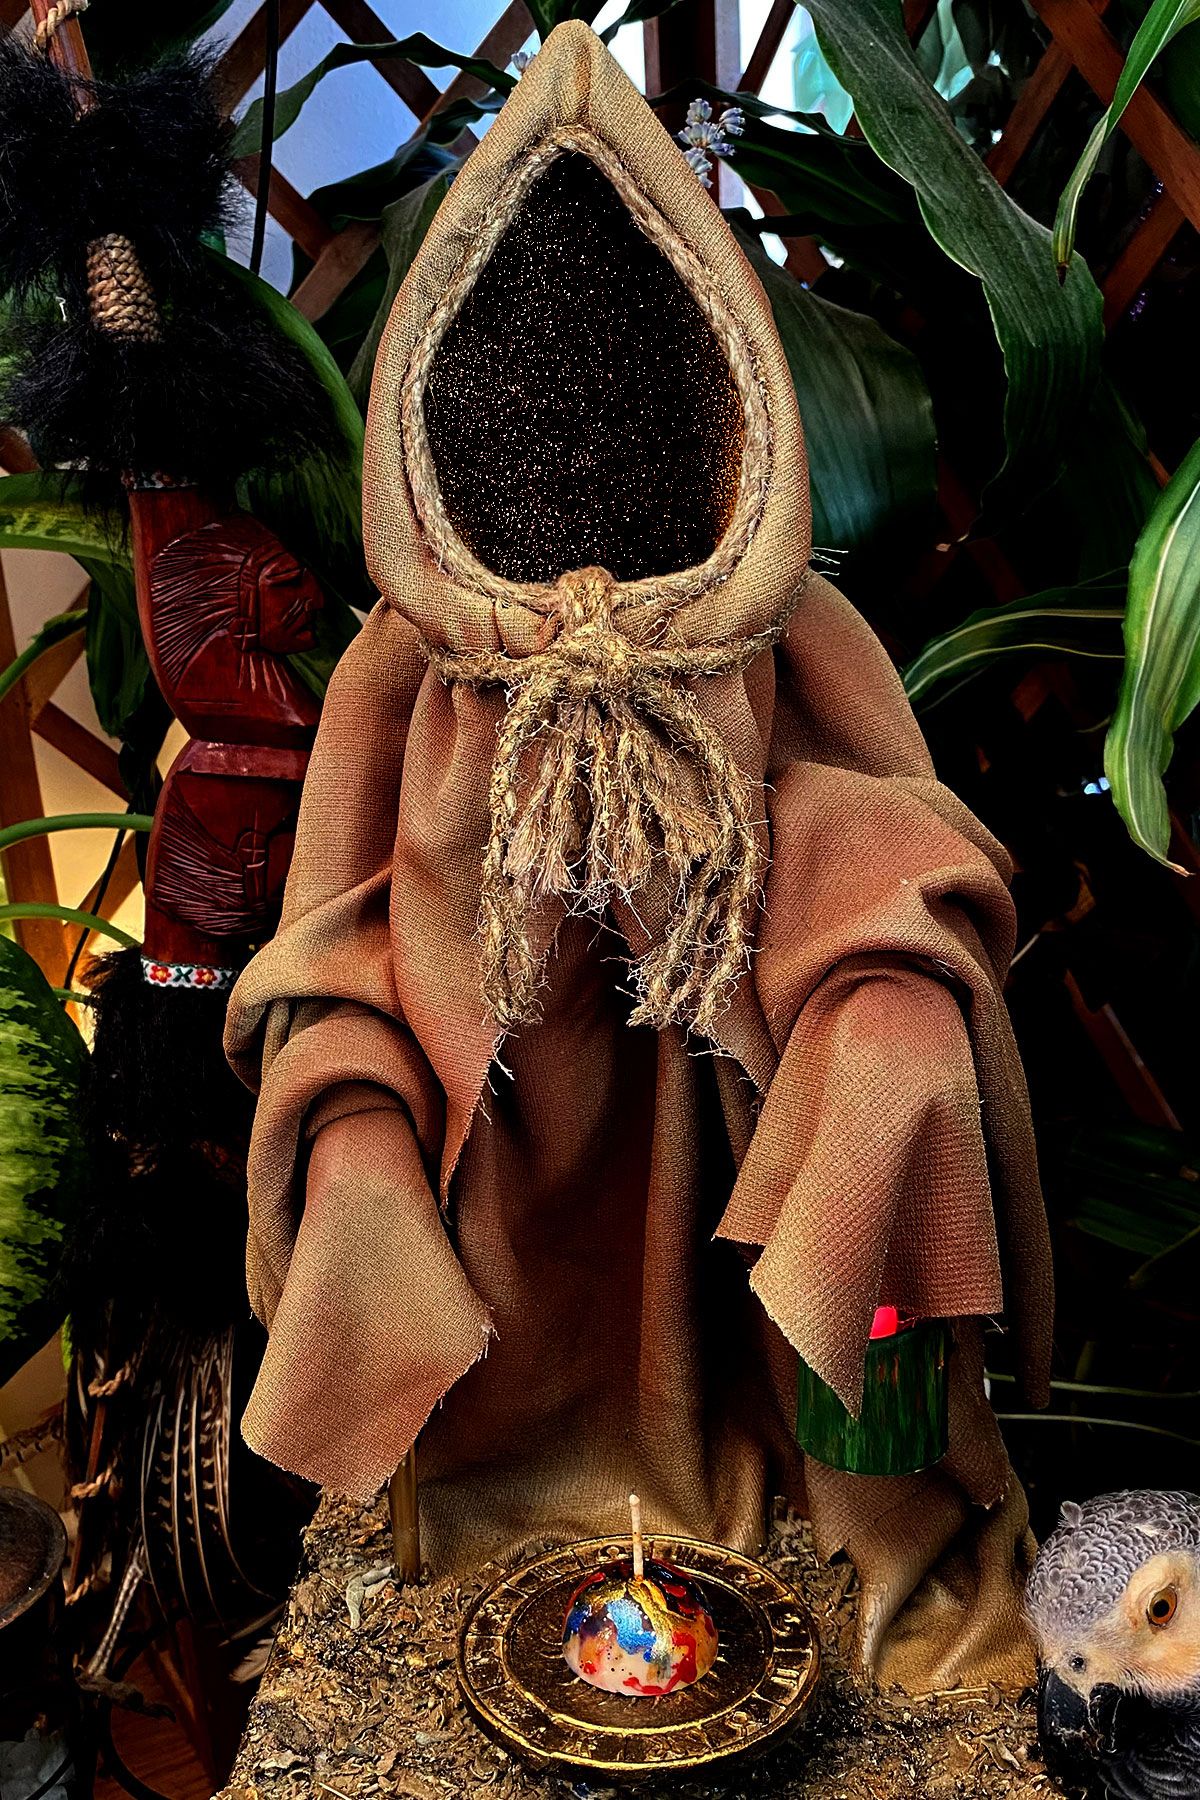 JOKER ABDUL İmzalı Dekoratif Hediyelik Cadı Model Mumluk Şamdan Tütsülük Heykeli - Limited Edition